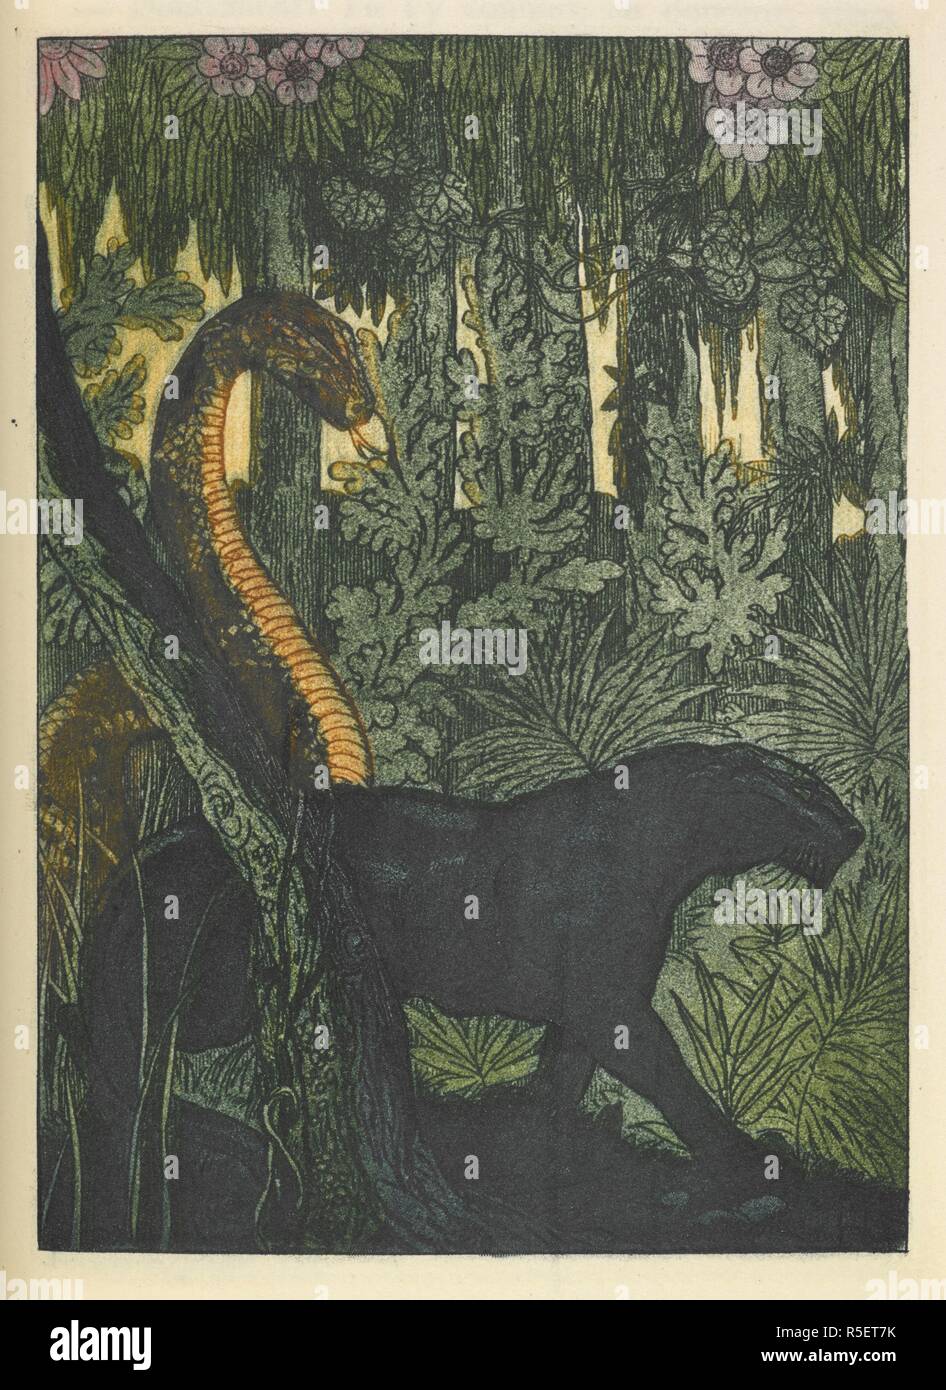 The python, Kaa and the panther, Bagheera. Le Second livre de la Jungle. Traduction de Louis Fabulet et Robert d'HumieÌ€res. Paris, [1899]. Source: File 617 plate facing page 36. Author: KIPLING, RUDYARD. Stock Photo